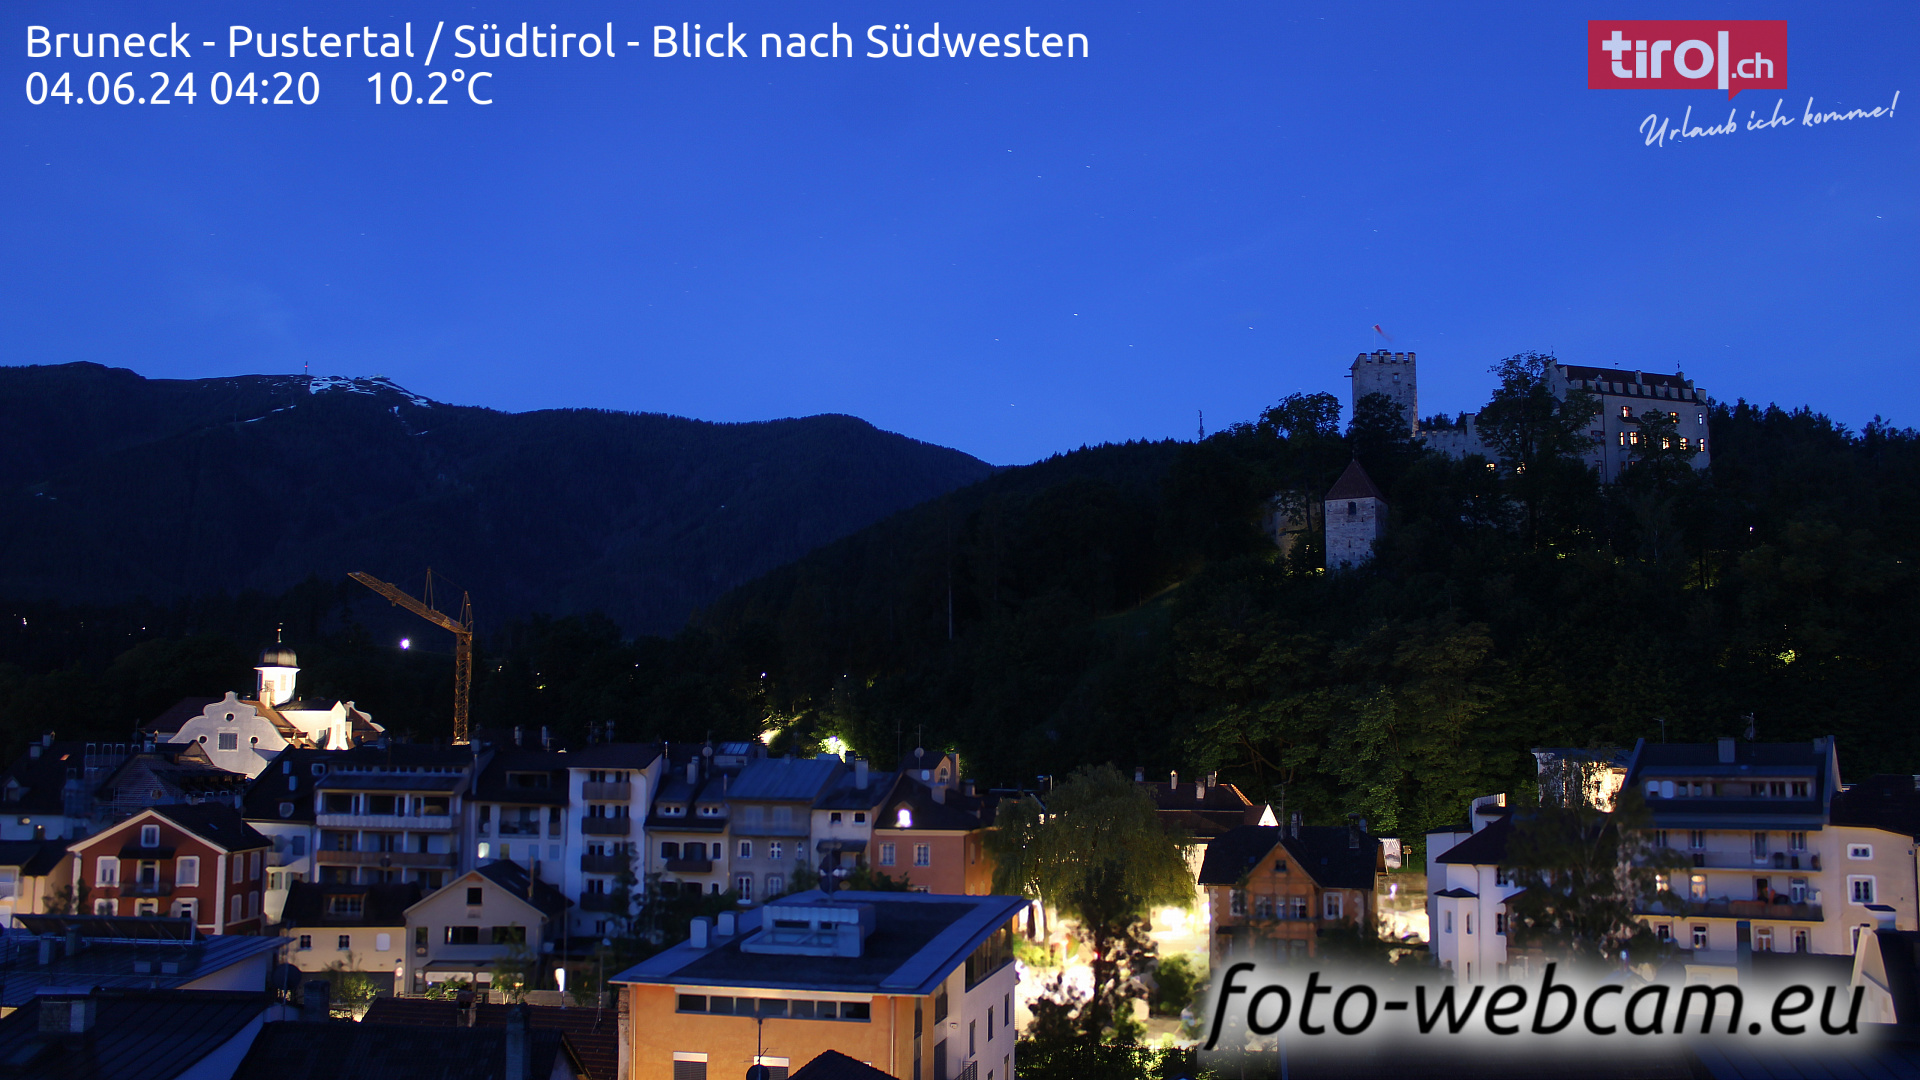 Bruneck Thu. 04:32